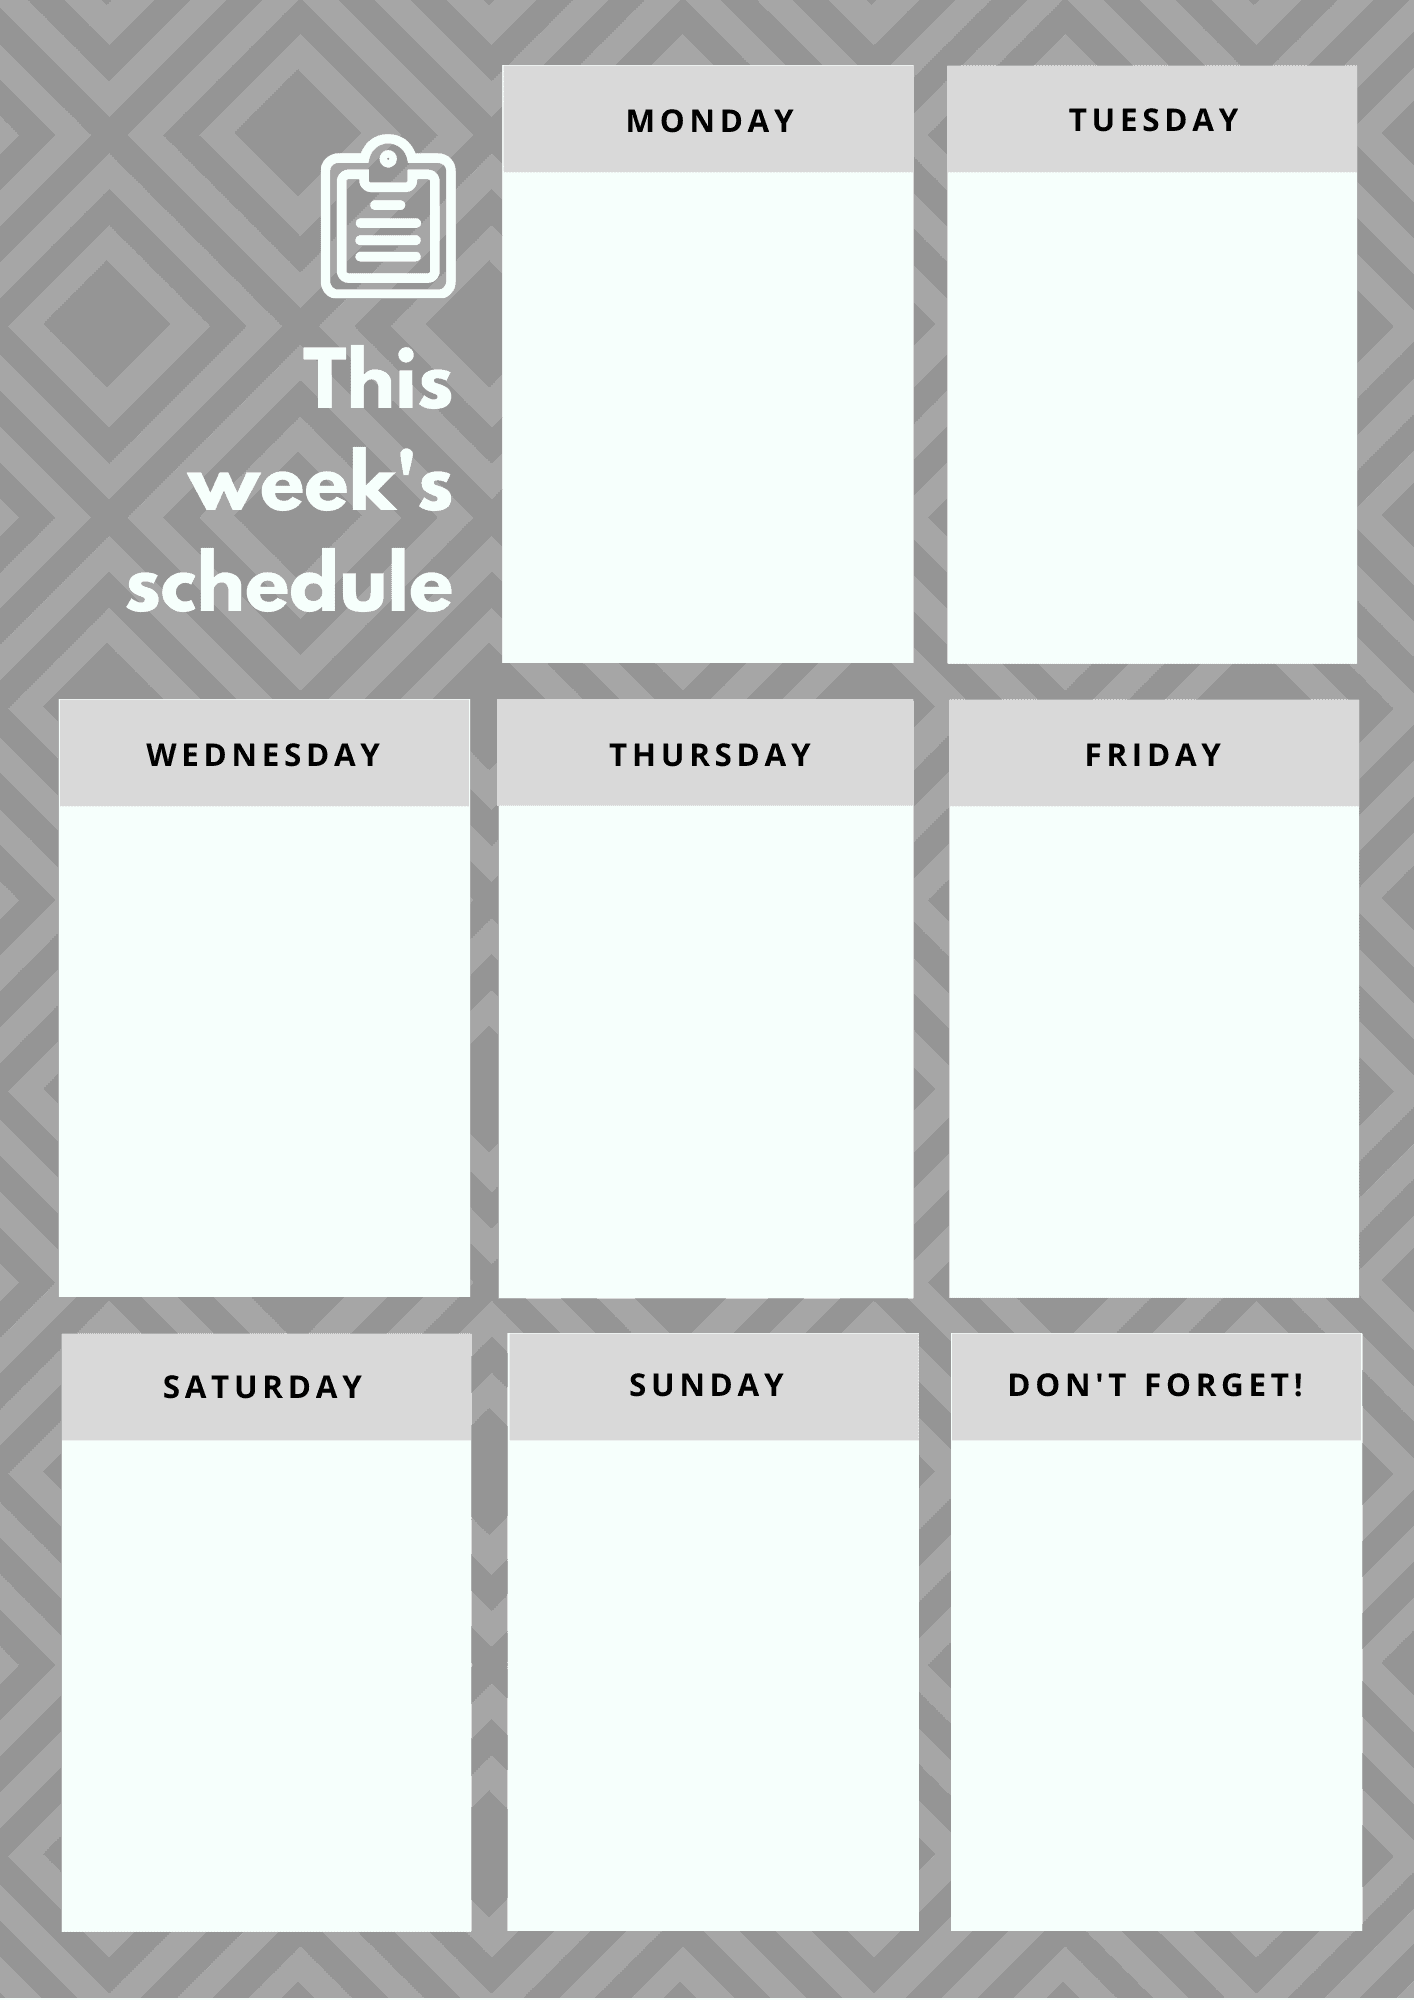 This weeks schedule planner en